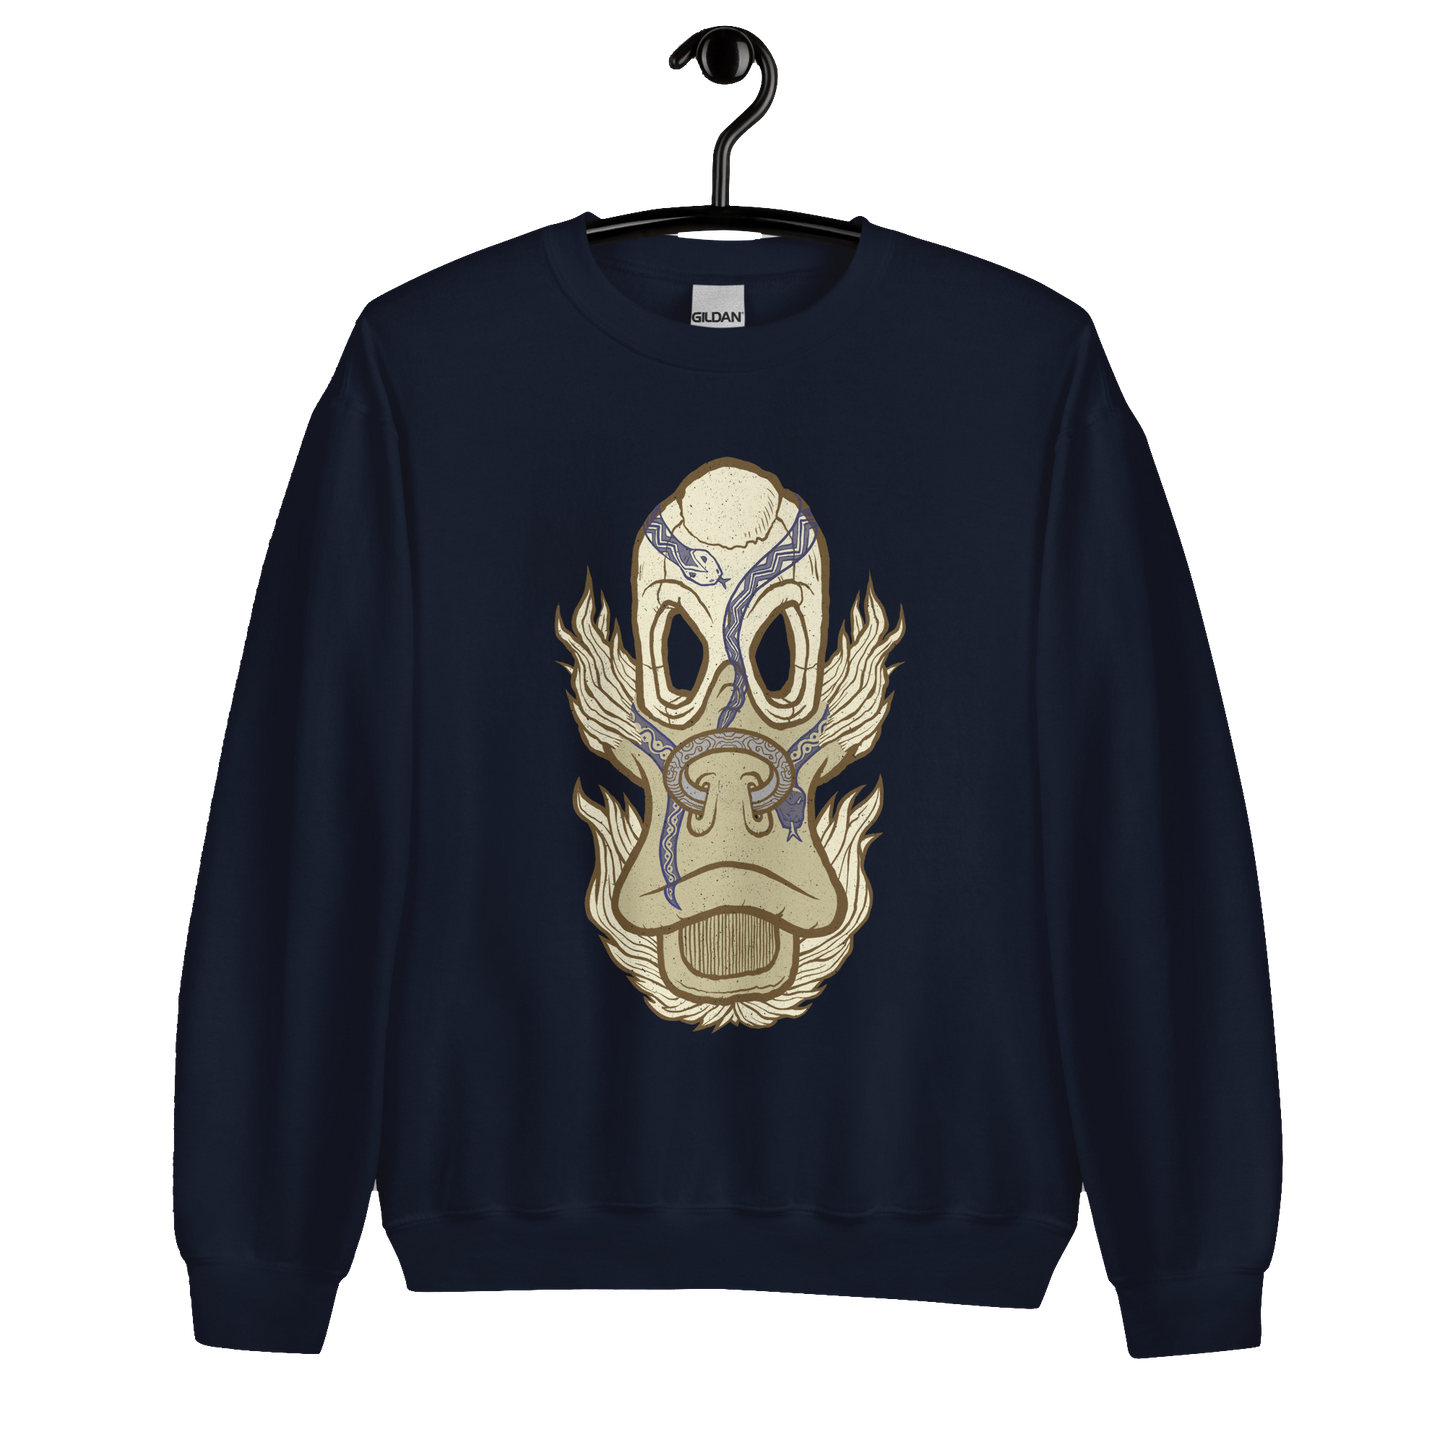 No 005 Wierd Duck Skull collection sweatshirt